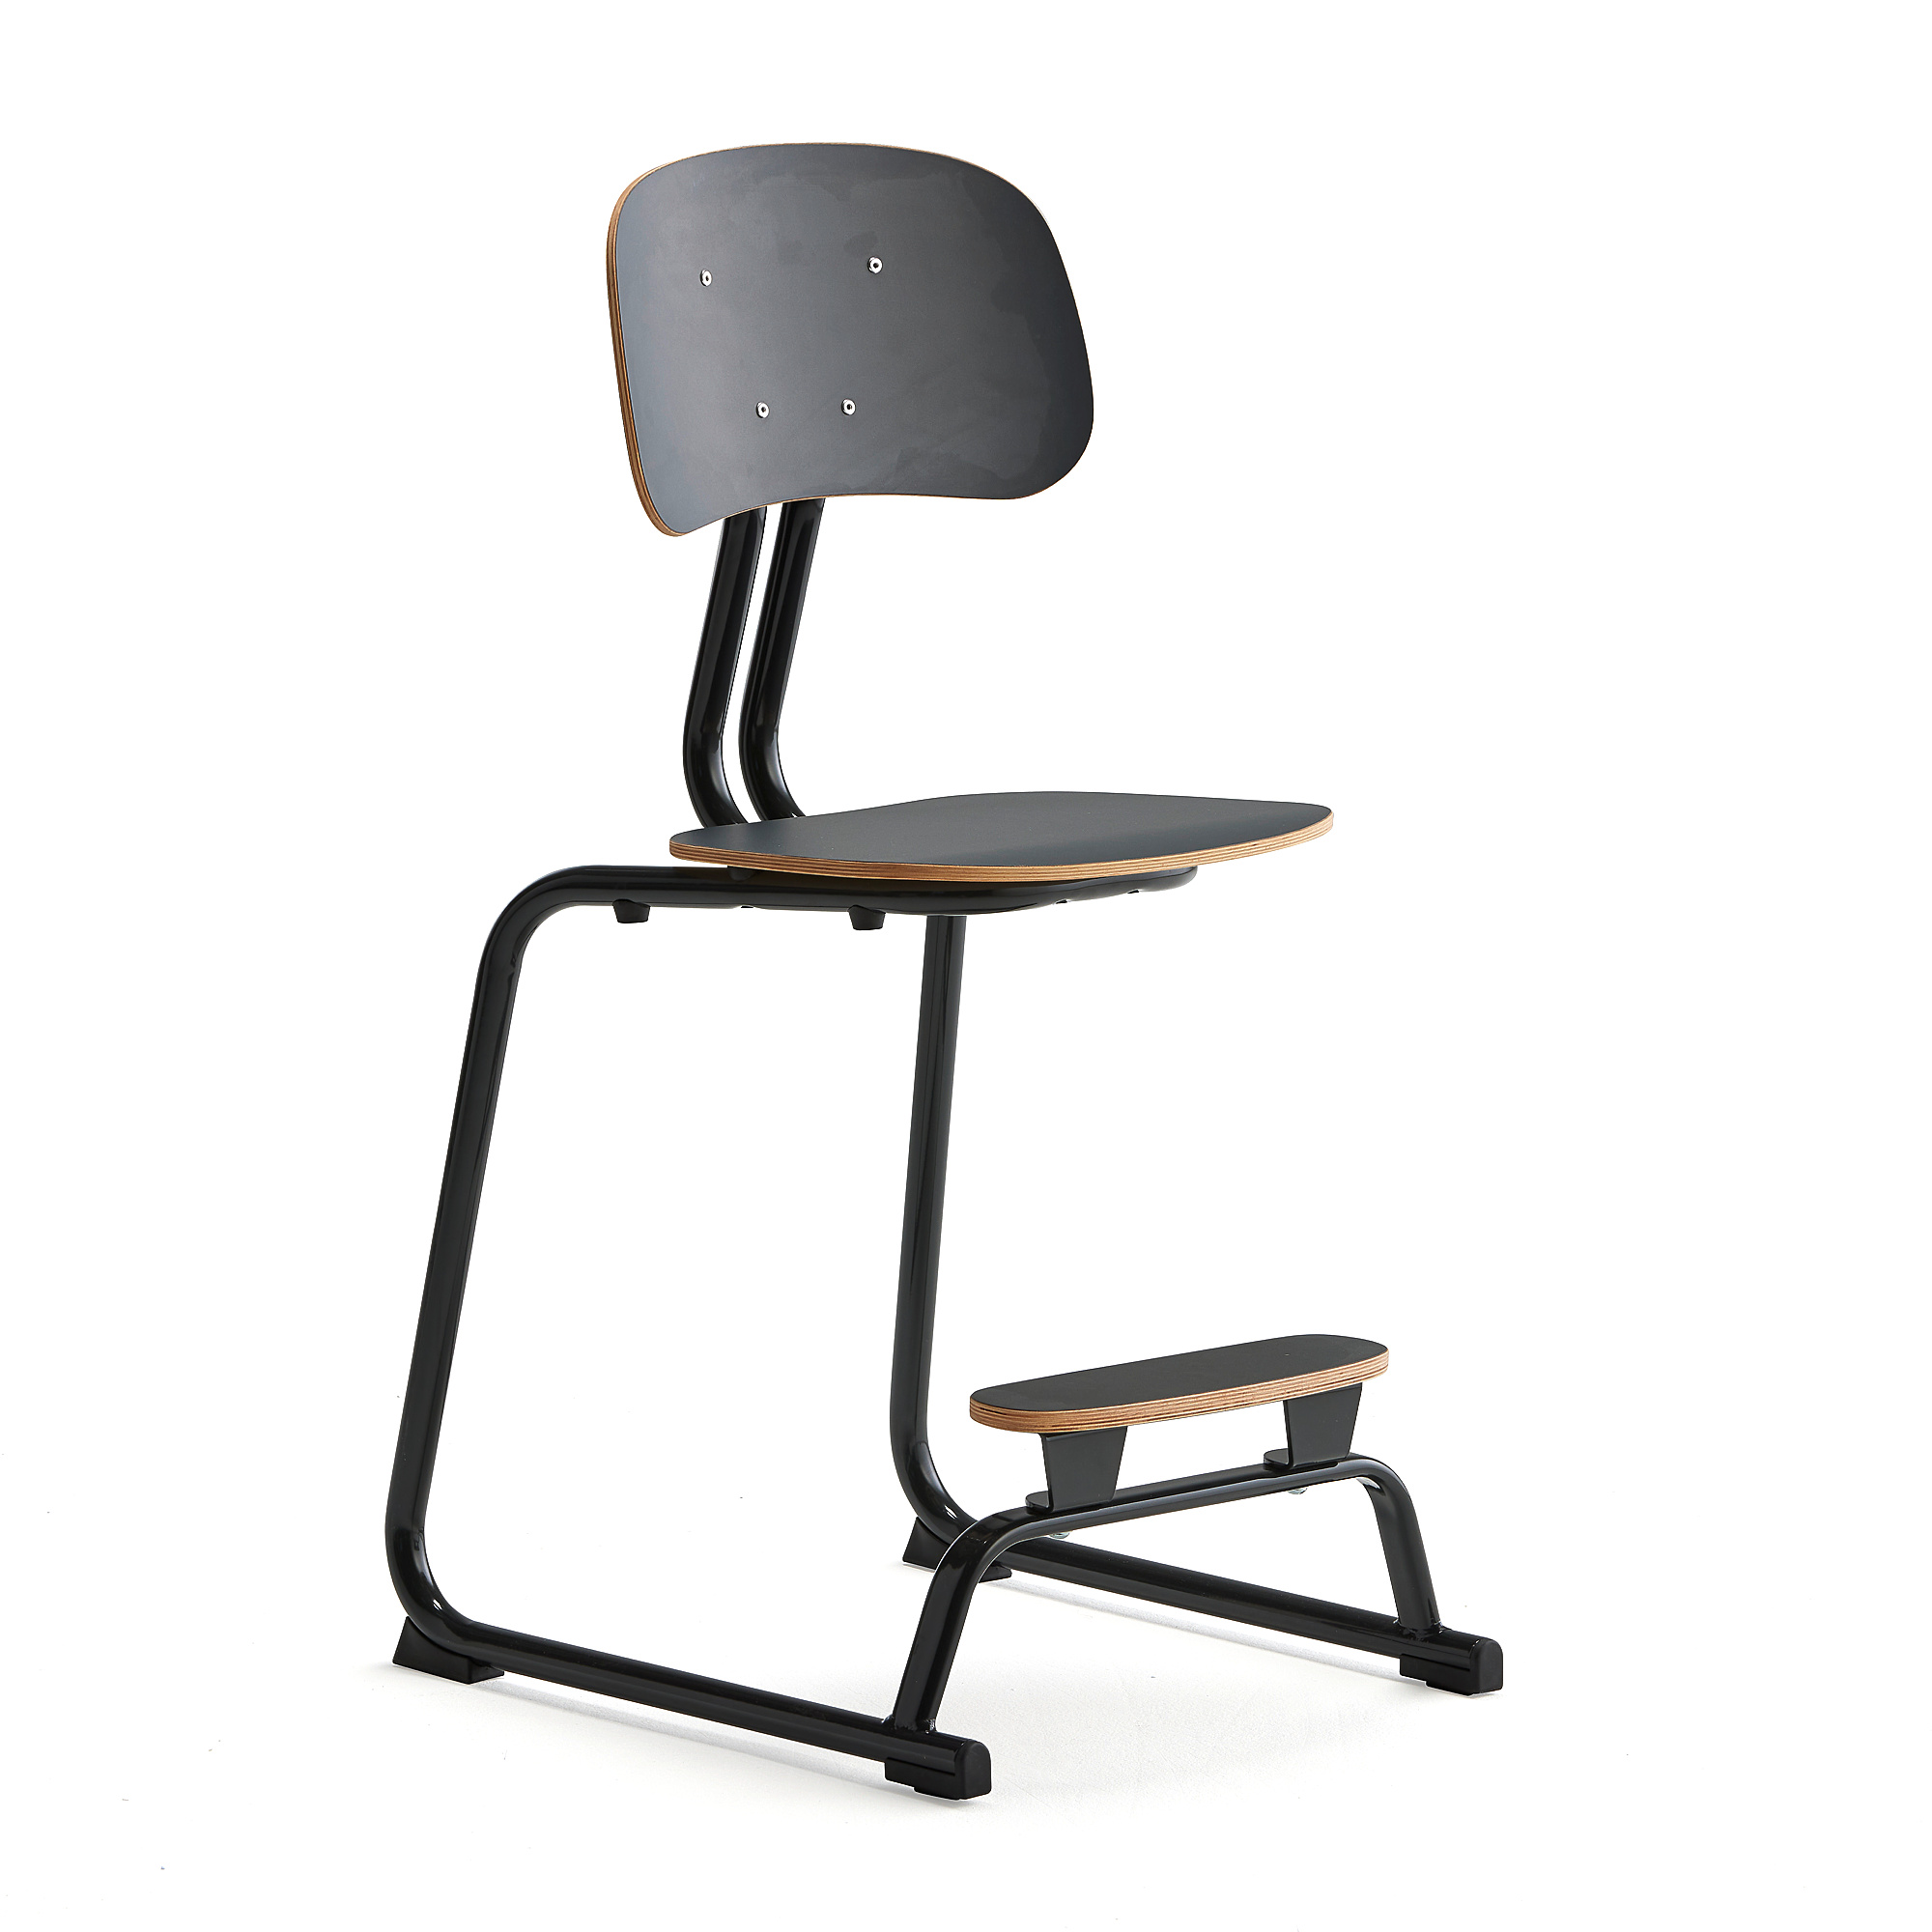 Školní židle YNGVE, ližinová podnož, výška 520 mm, antracitově šedá